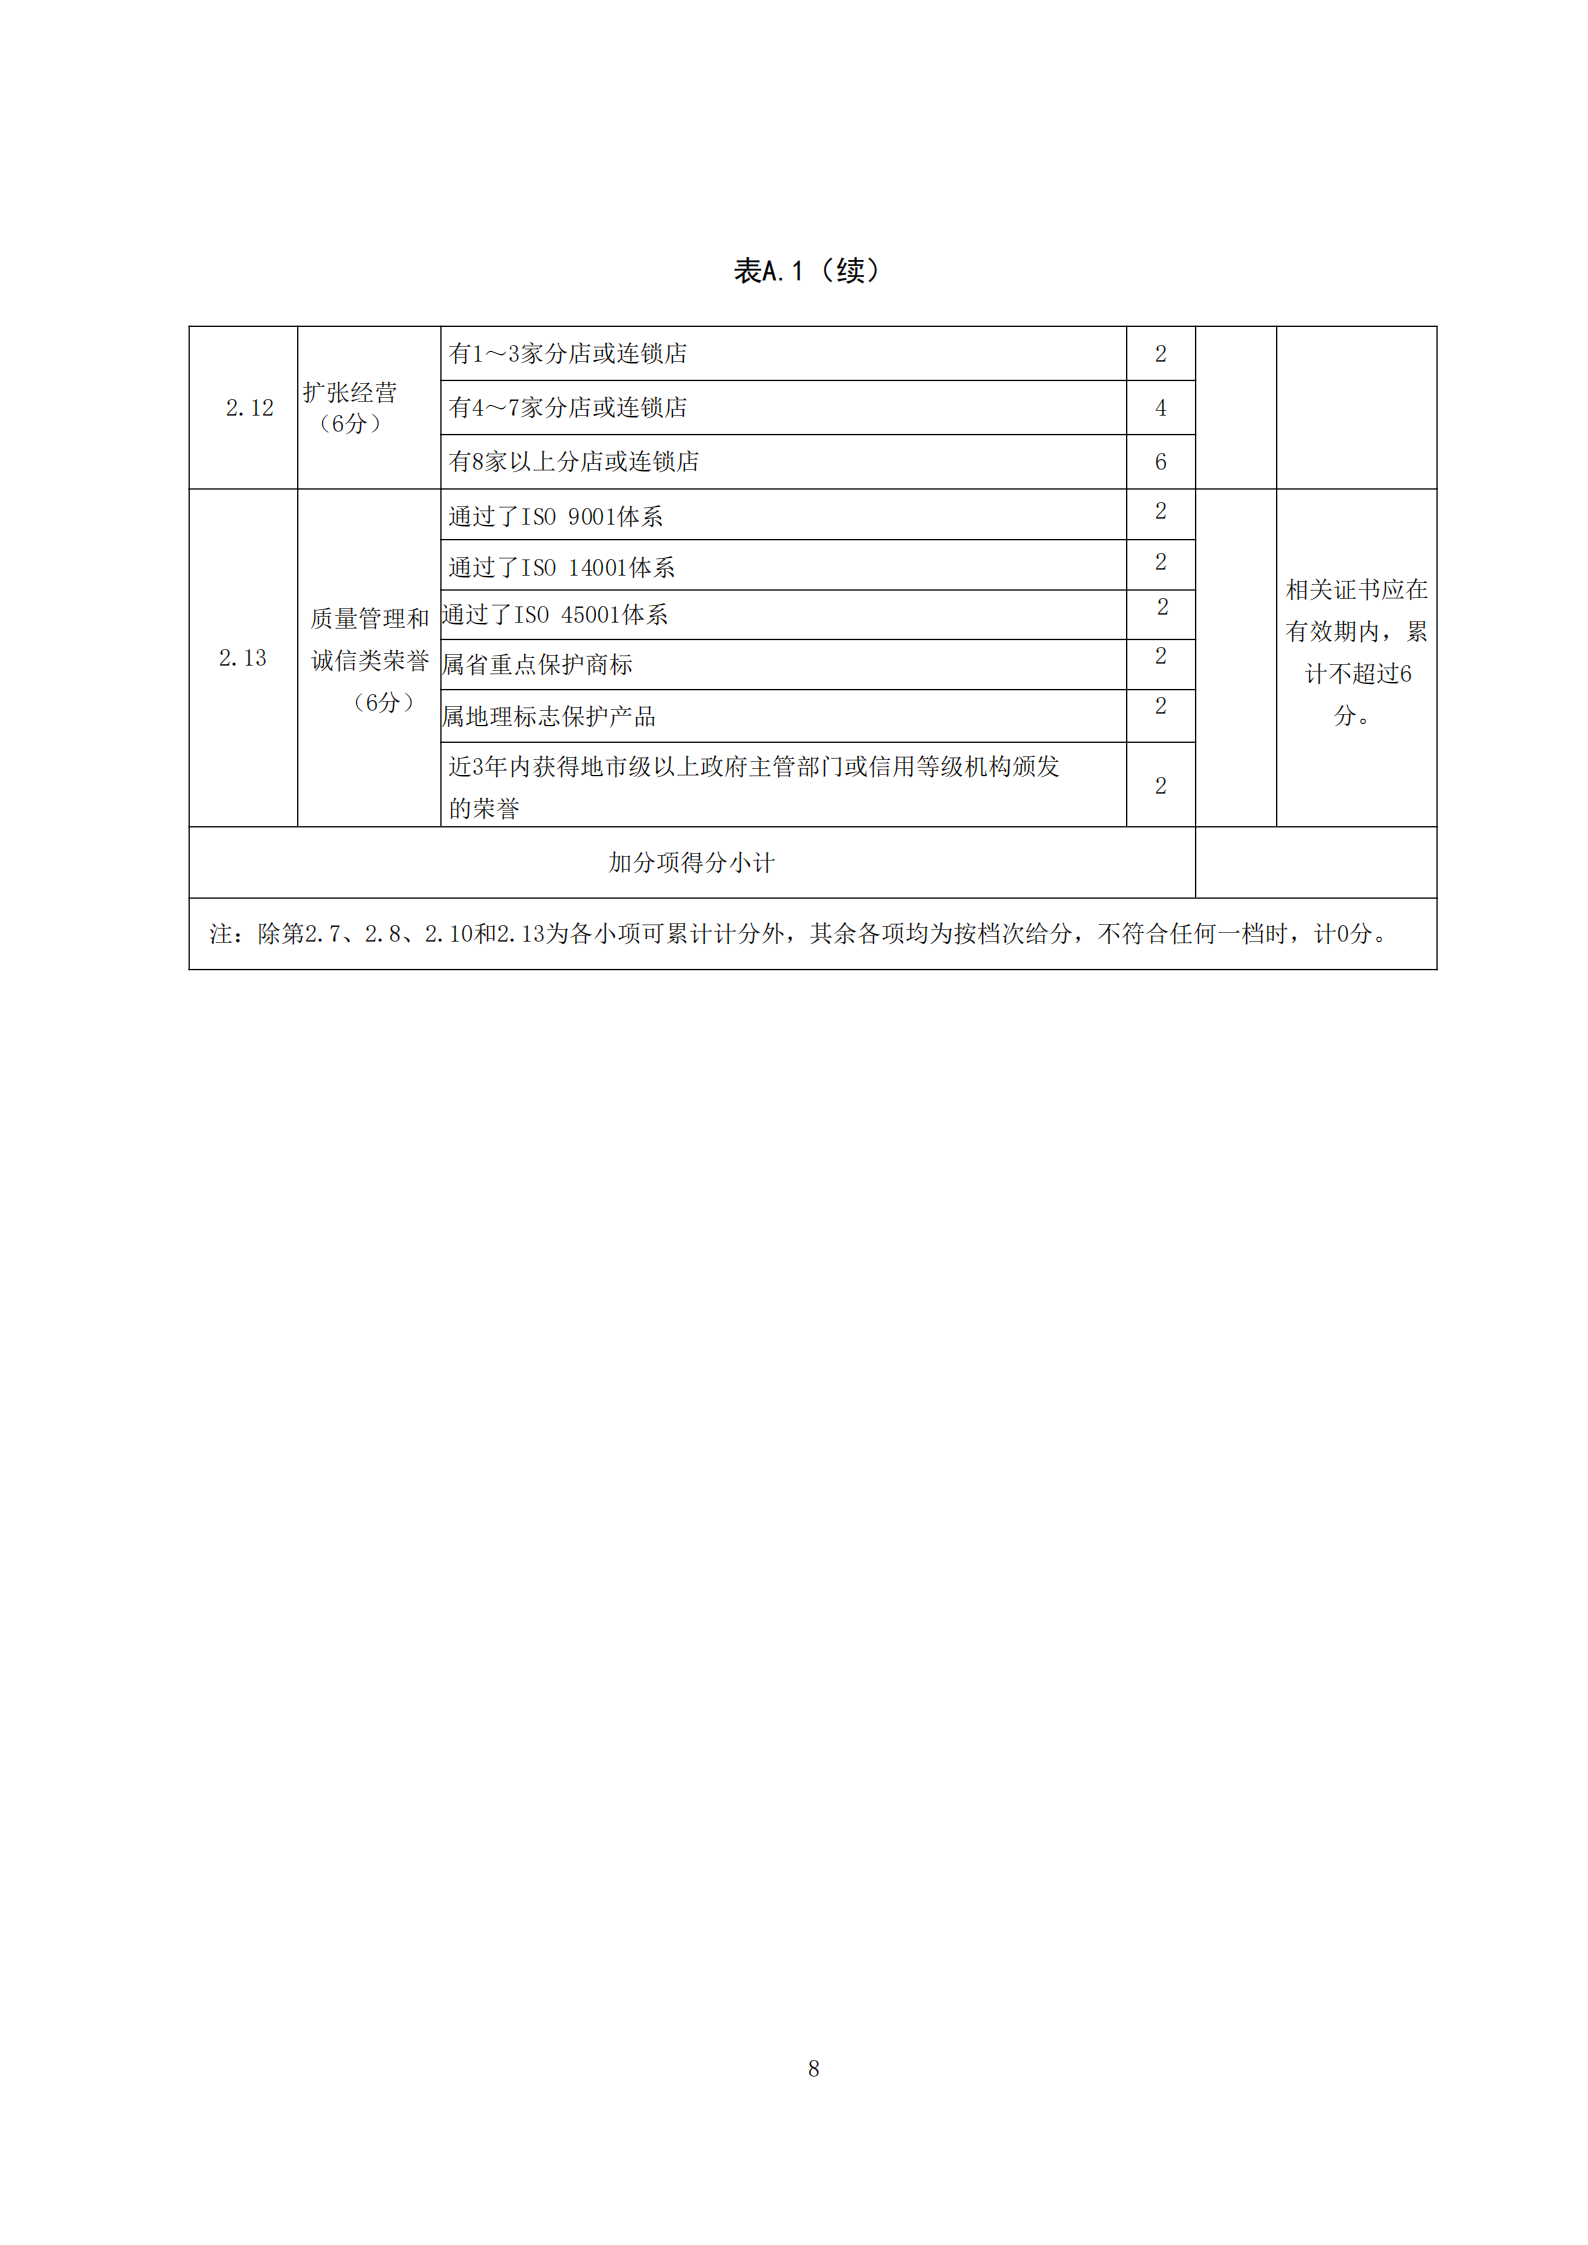 广府老字号认证技术规范(1)_09.png